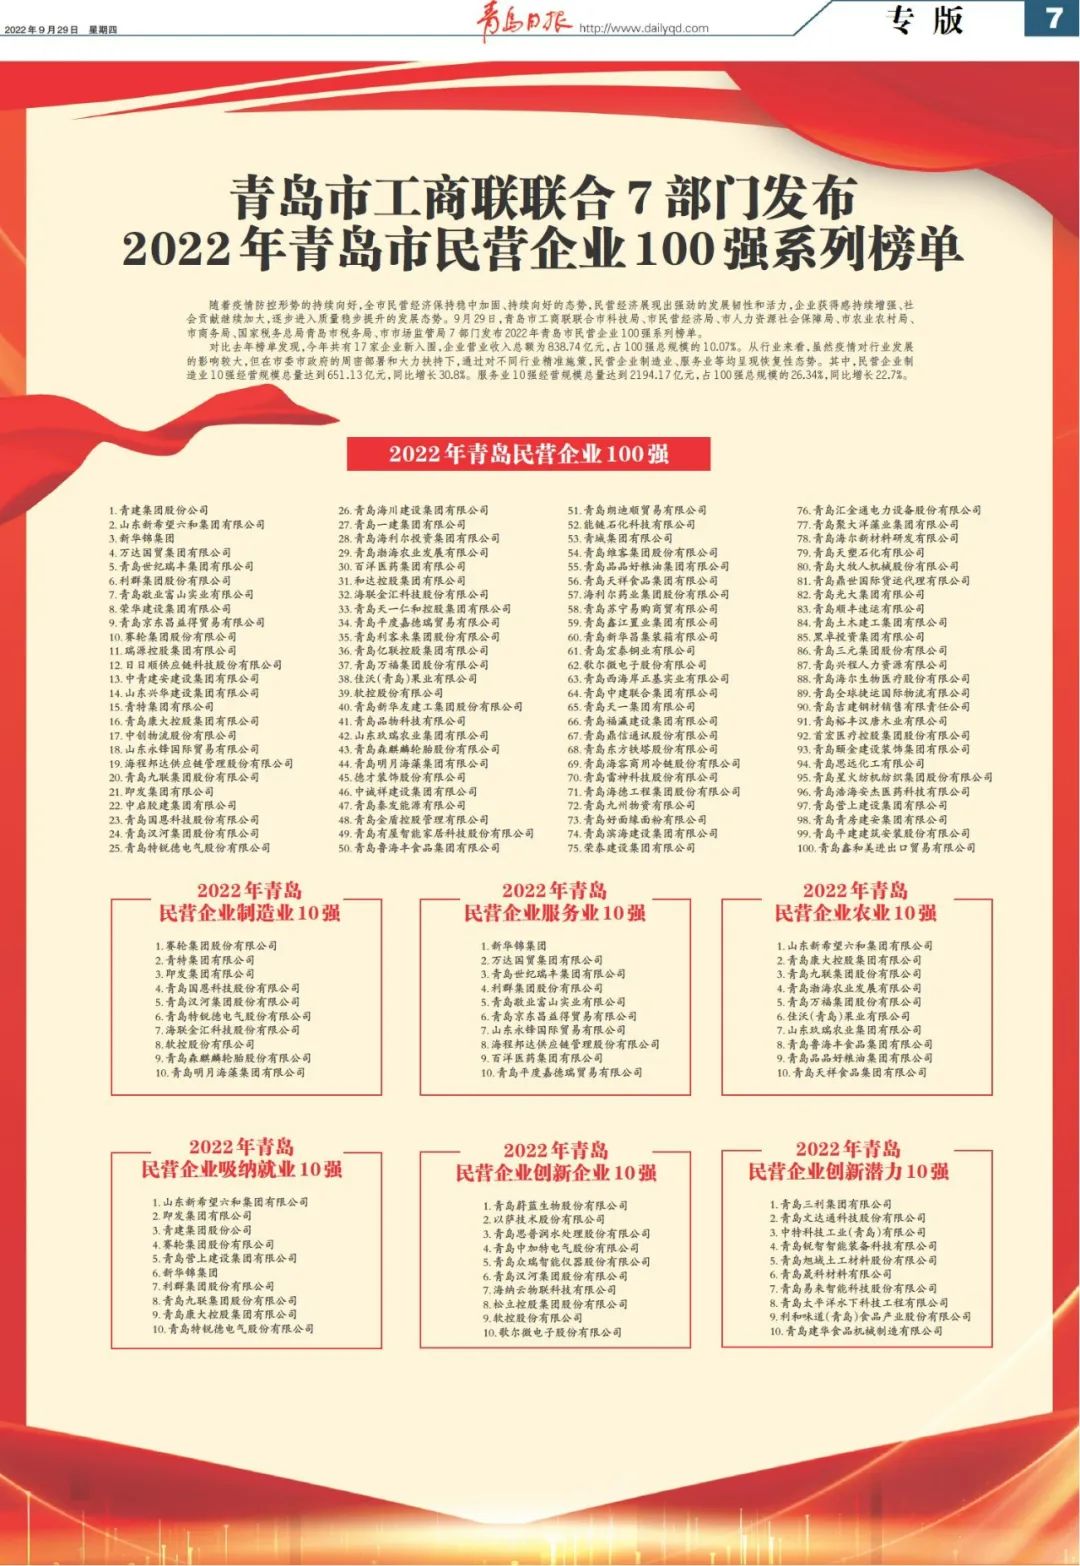 青岛好单位排行榜(2022年青岛民营企业100强系列榜单发布)